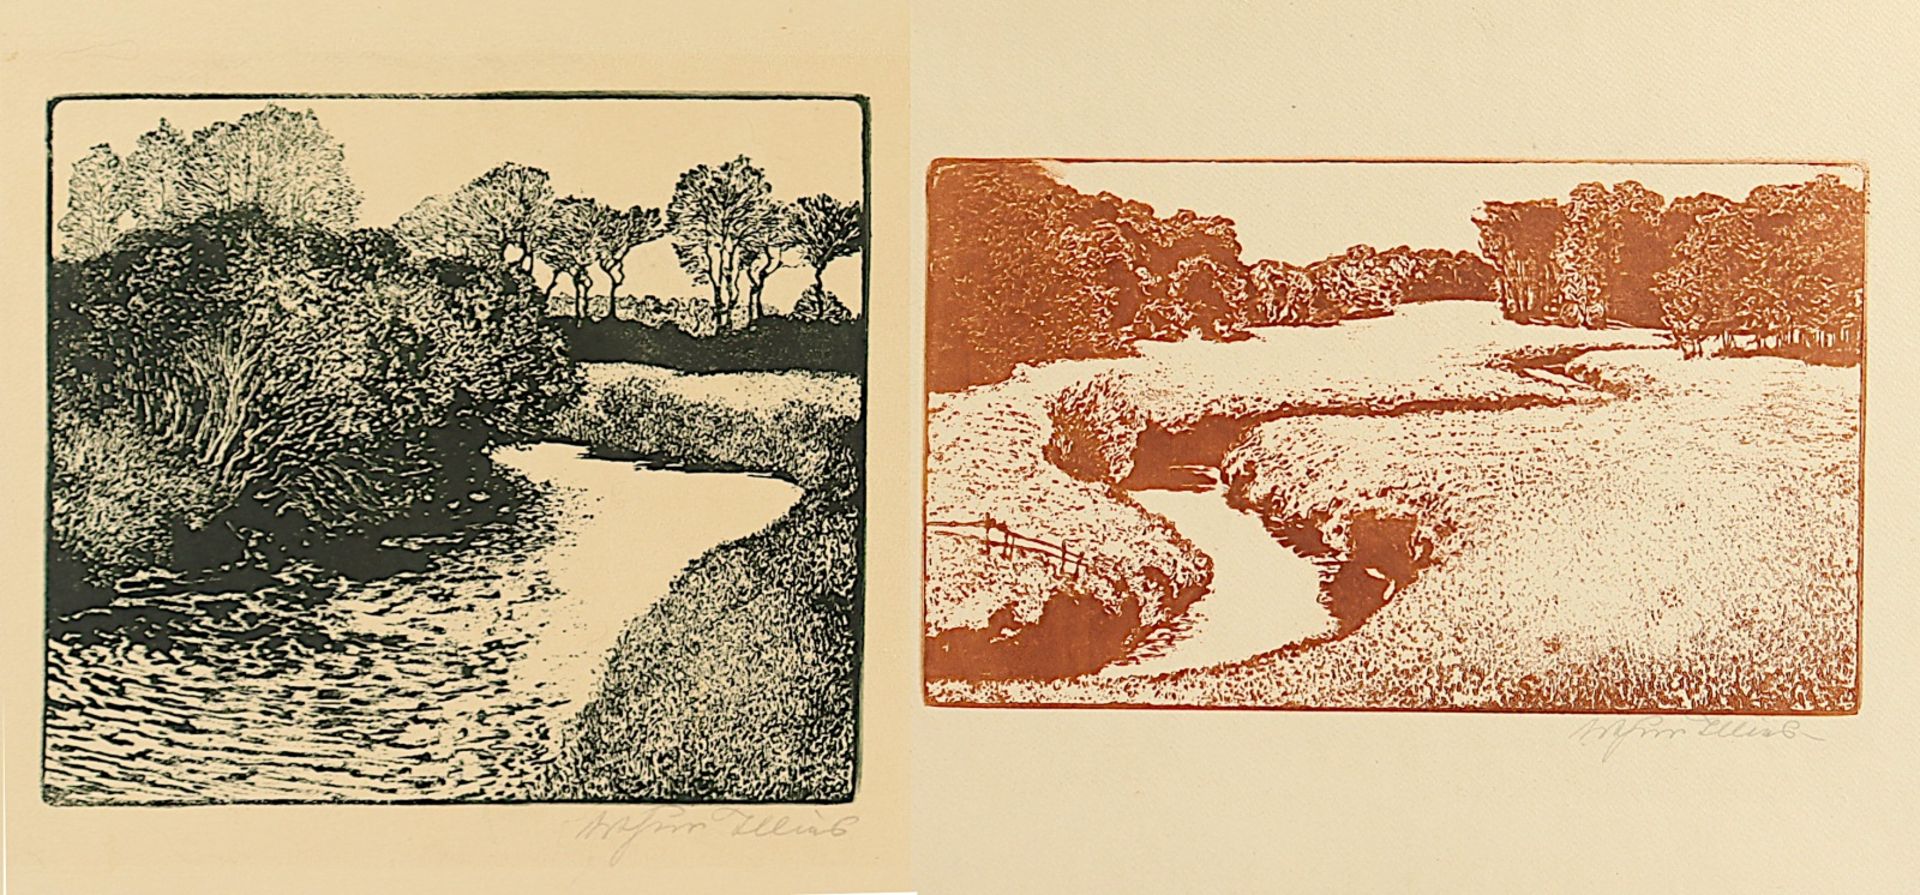 ILLIES, Arthur, 2 Arbeiten, "Alsterwiesen" und "Uferweiden", Zinkätzungen 24 x 28, jeweils handsign